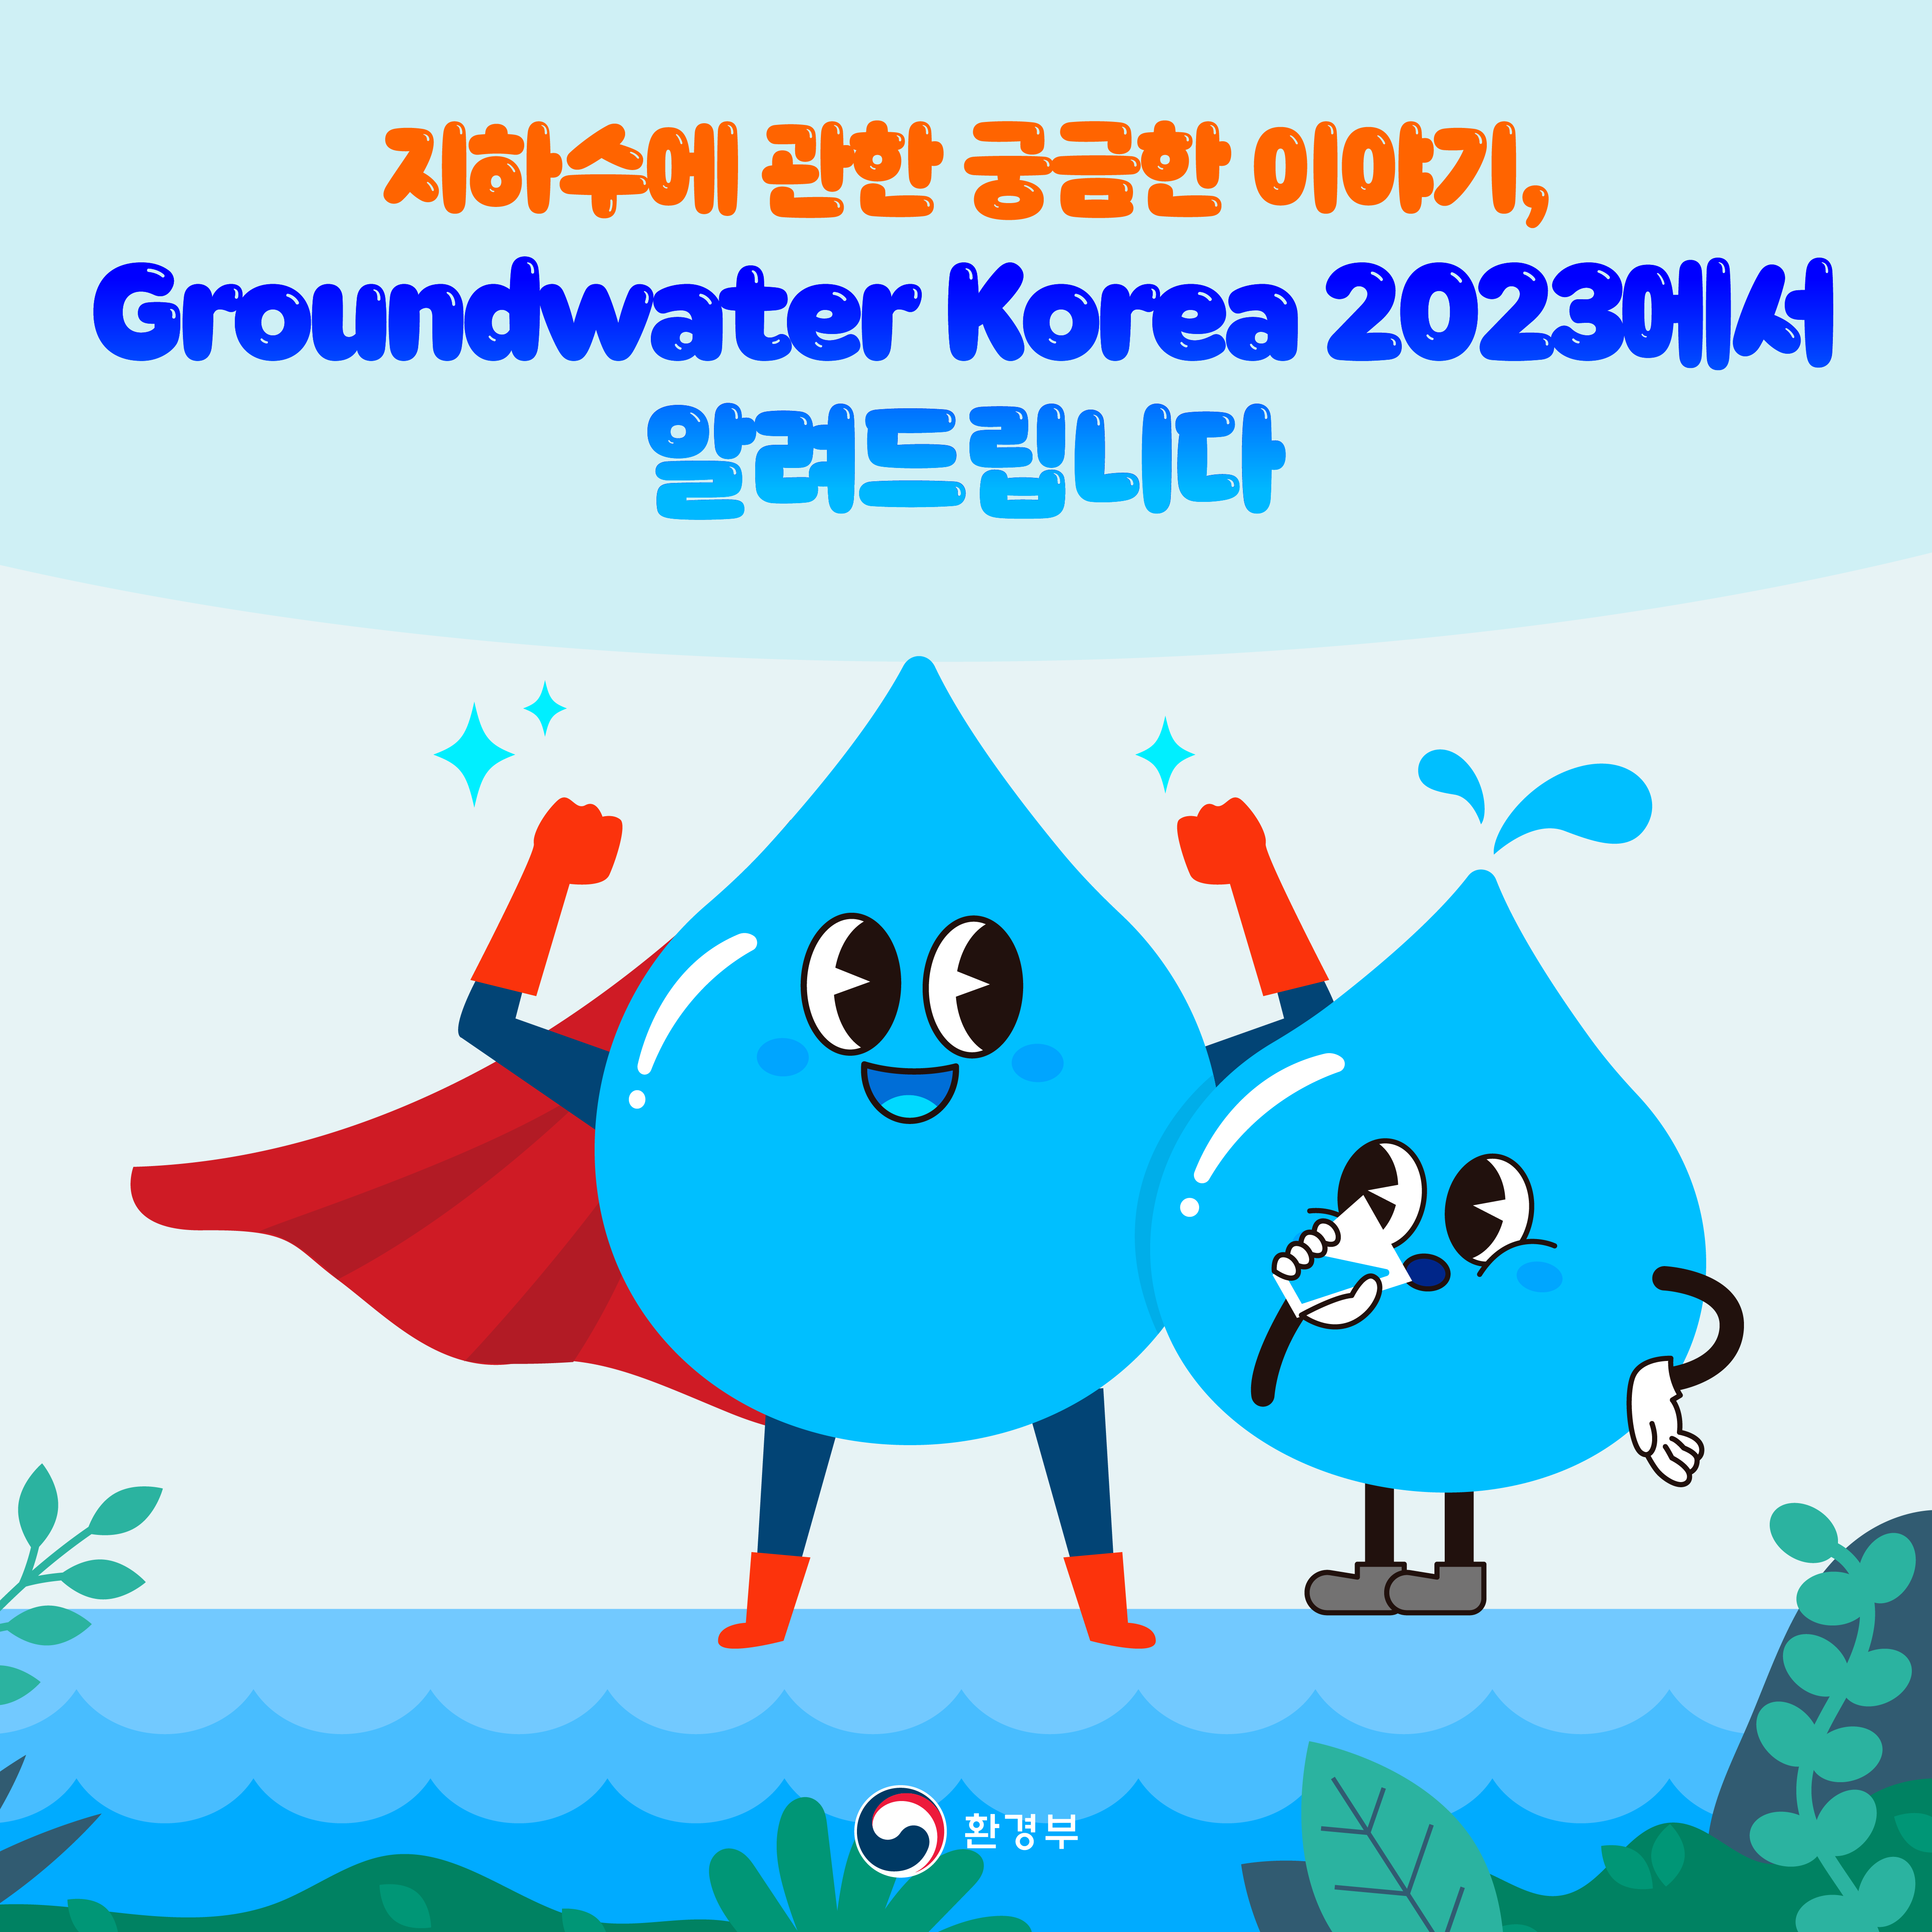 지하수에 관한 궁금한 이야기, Groundwater Korea 2023에서 알려드립니다 환경부